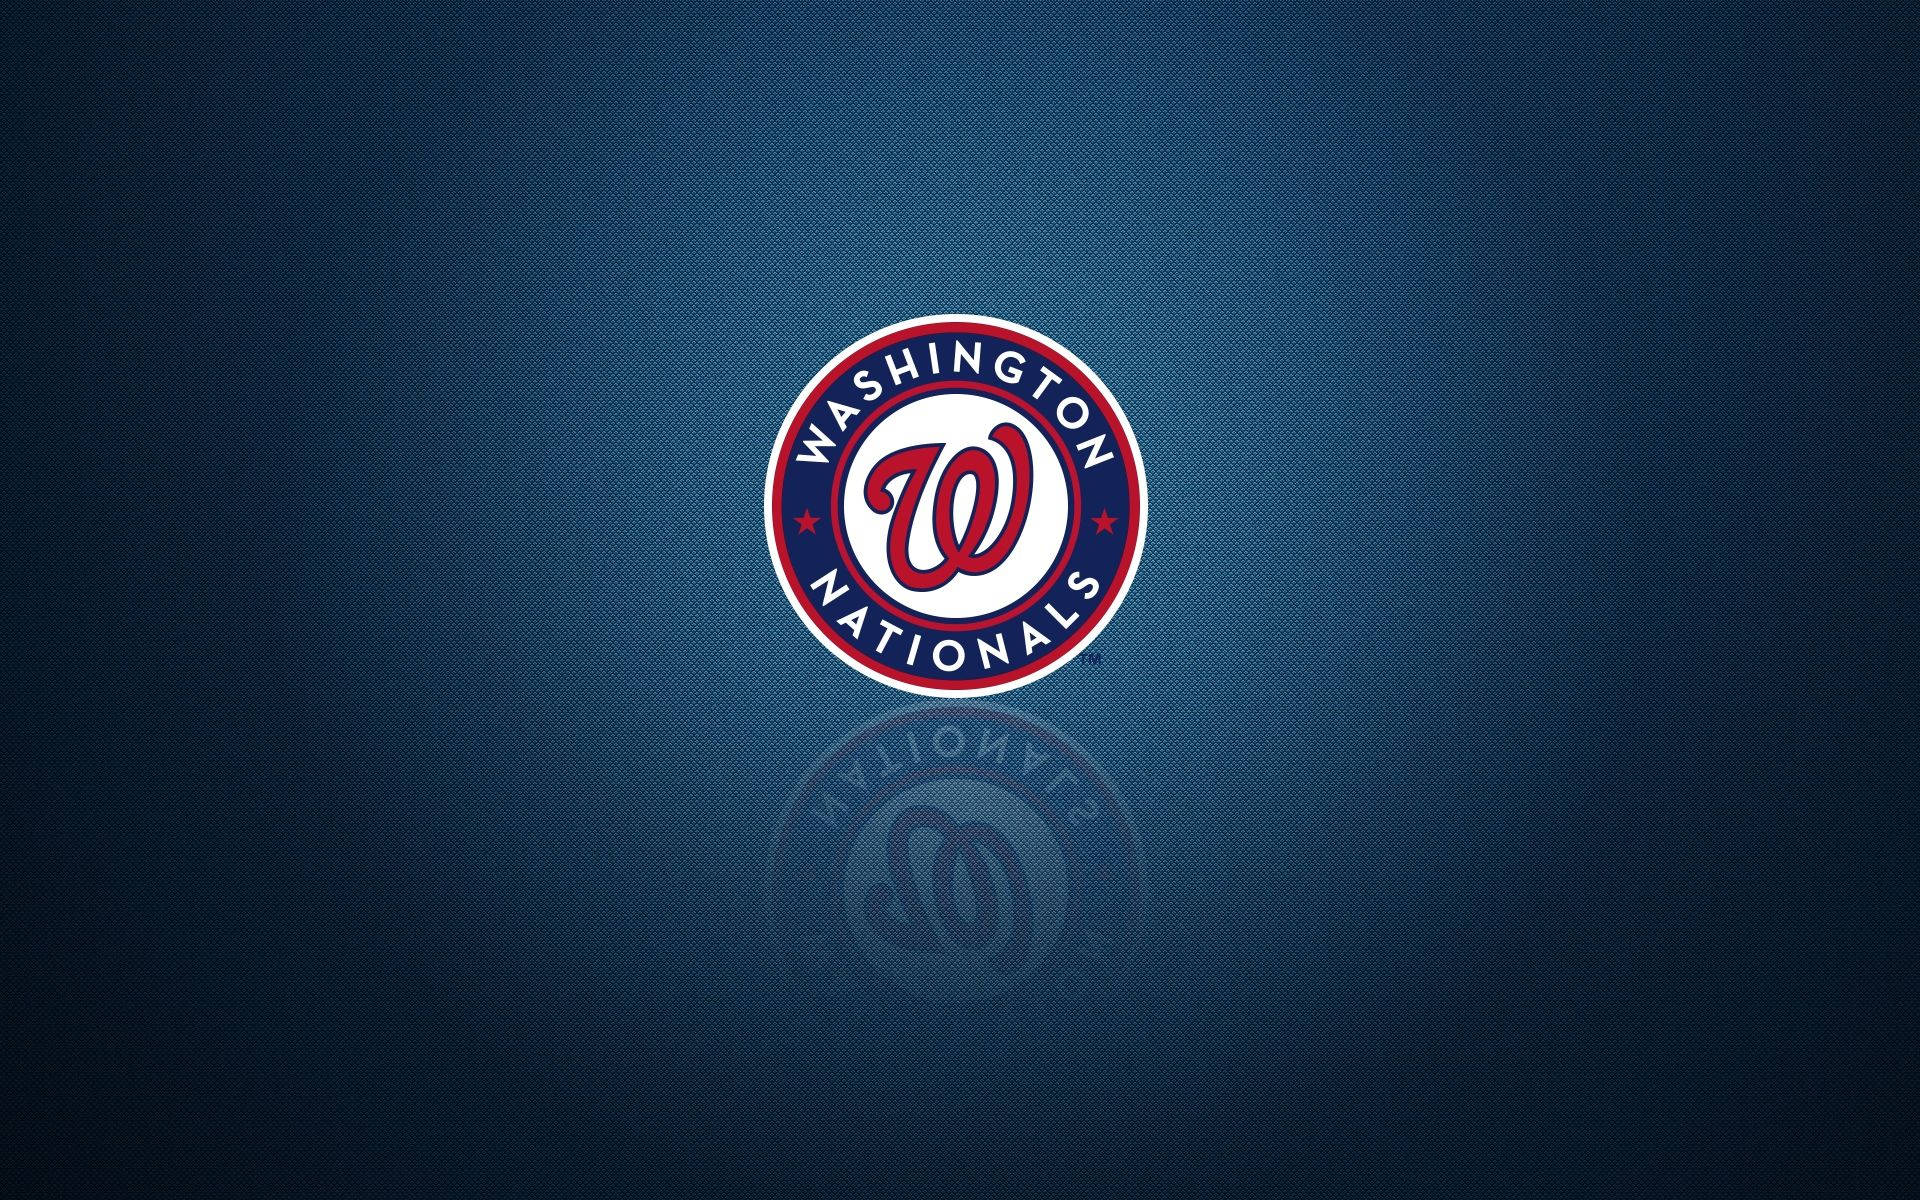 Washington Nationals Reflected Logo Background